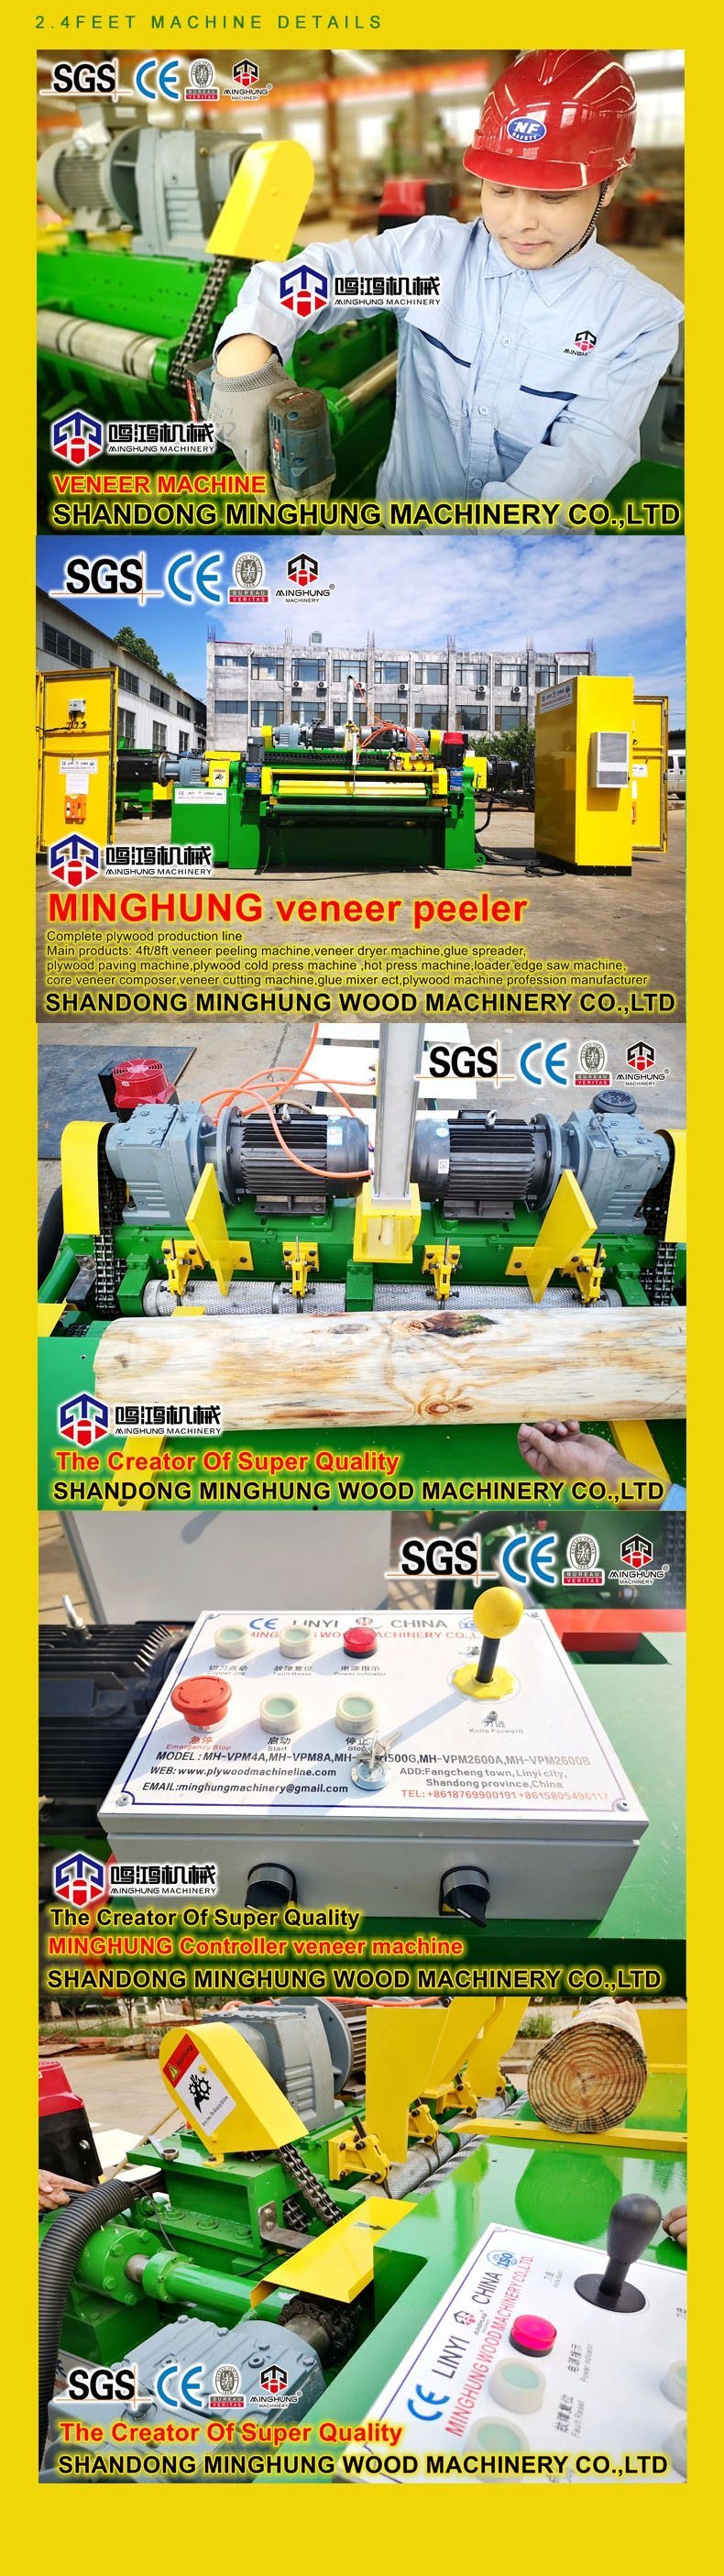 Strong Rotary Wood Veneer Peeling Machine for 0.3-3.5mm